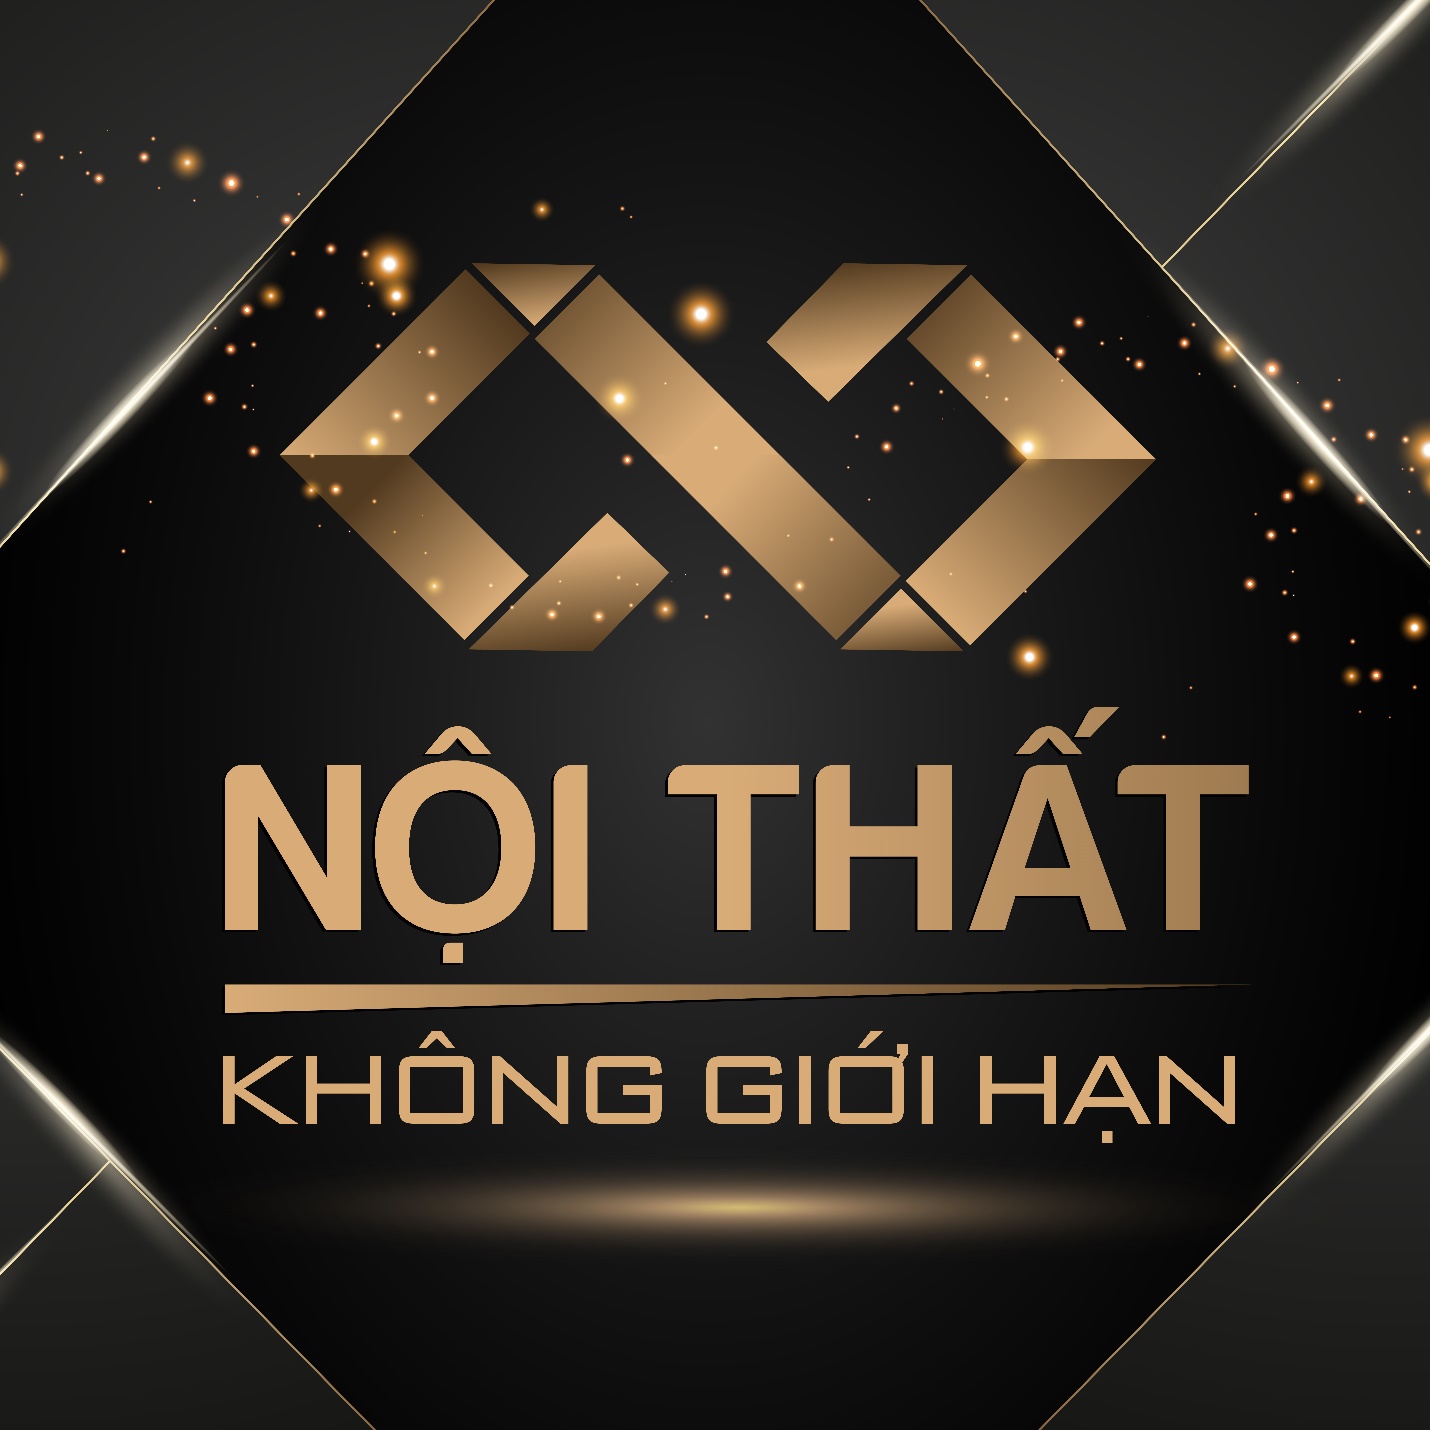 Noi-that-khong-gioi-han-01